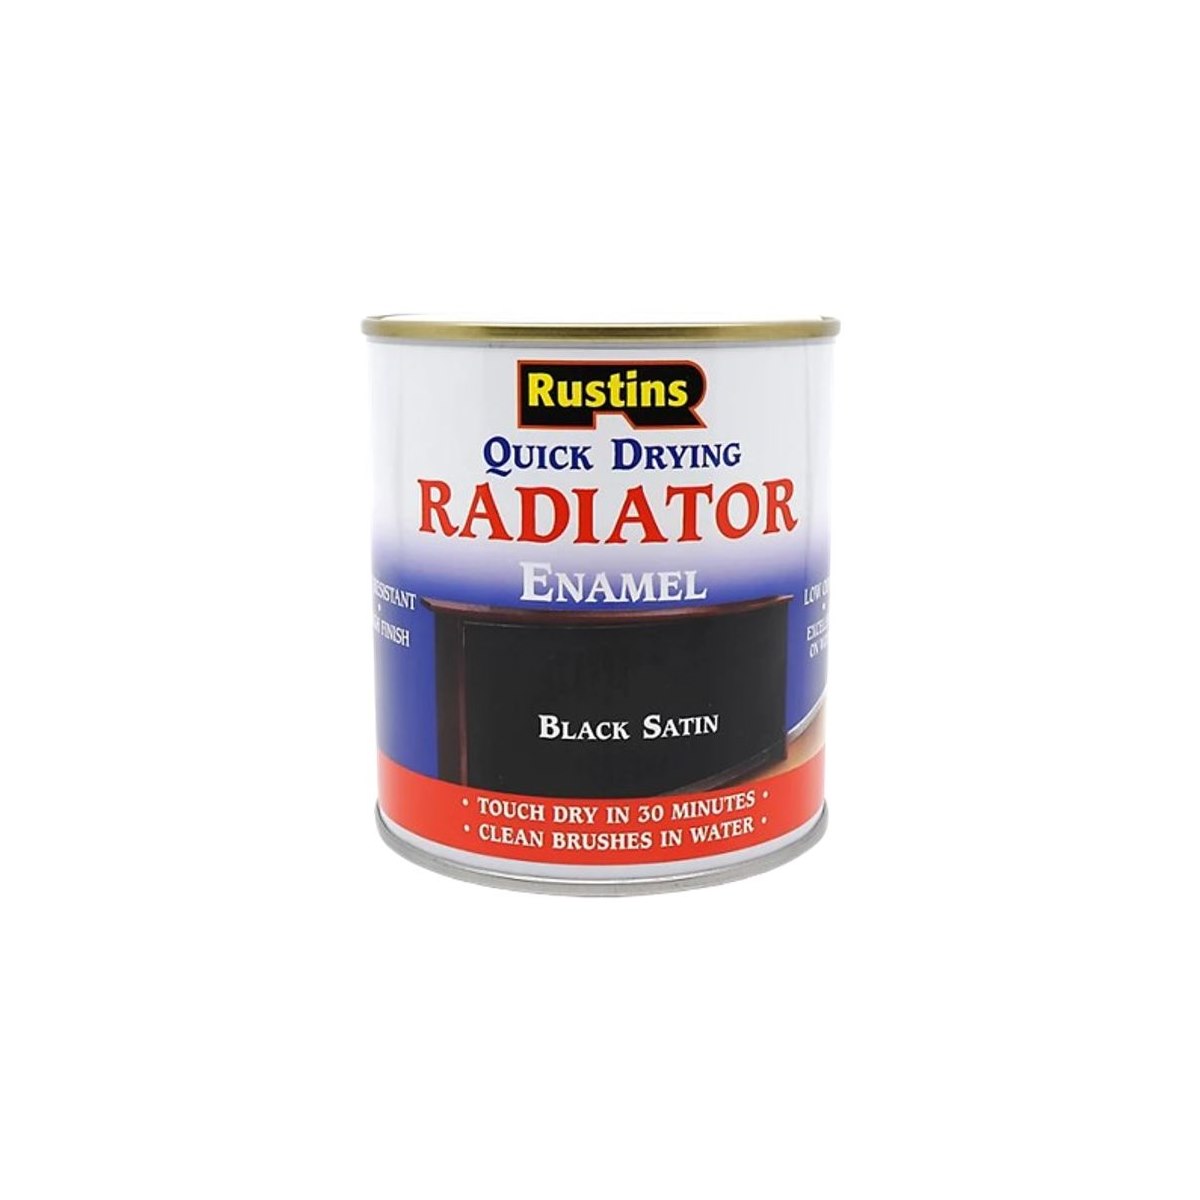 Rustins Quick Drying Radiator Enamel Black Satin 500ml